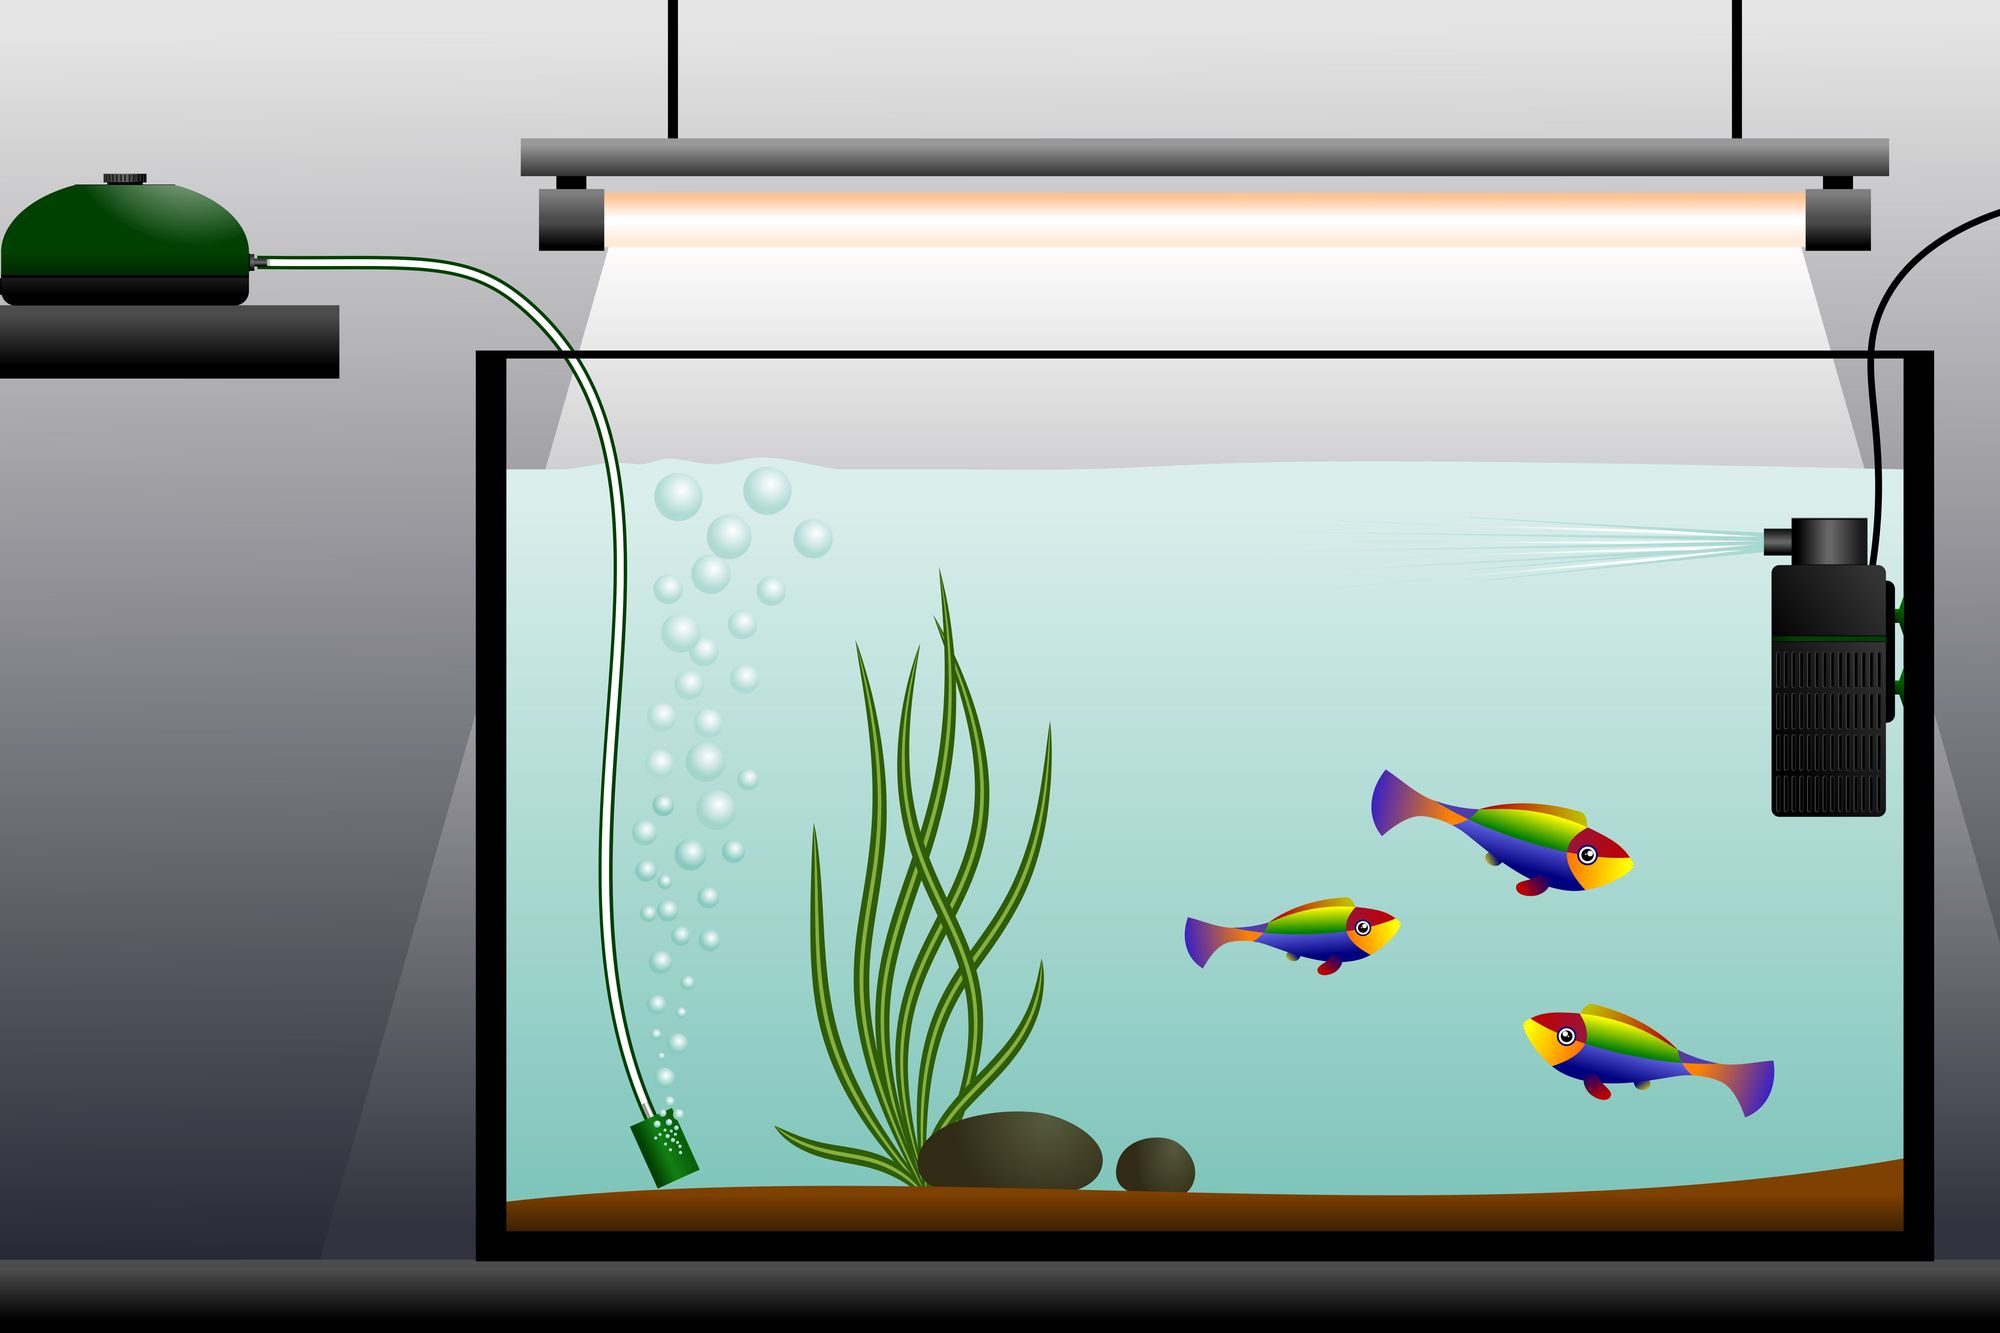 Quel filtre choisir pour mon aquarium ?